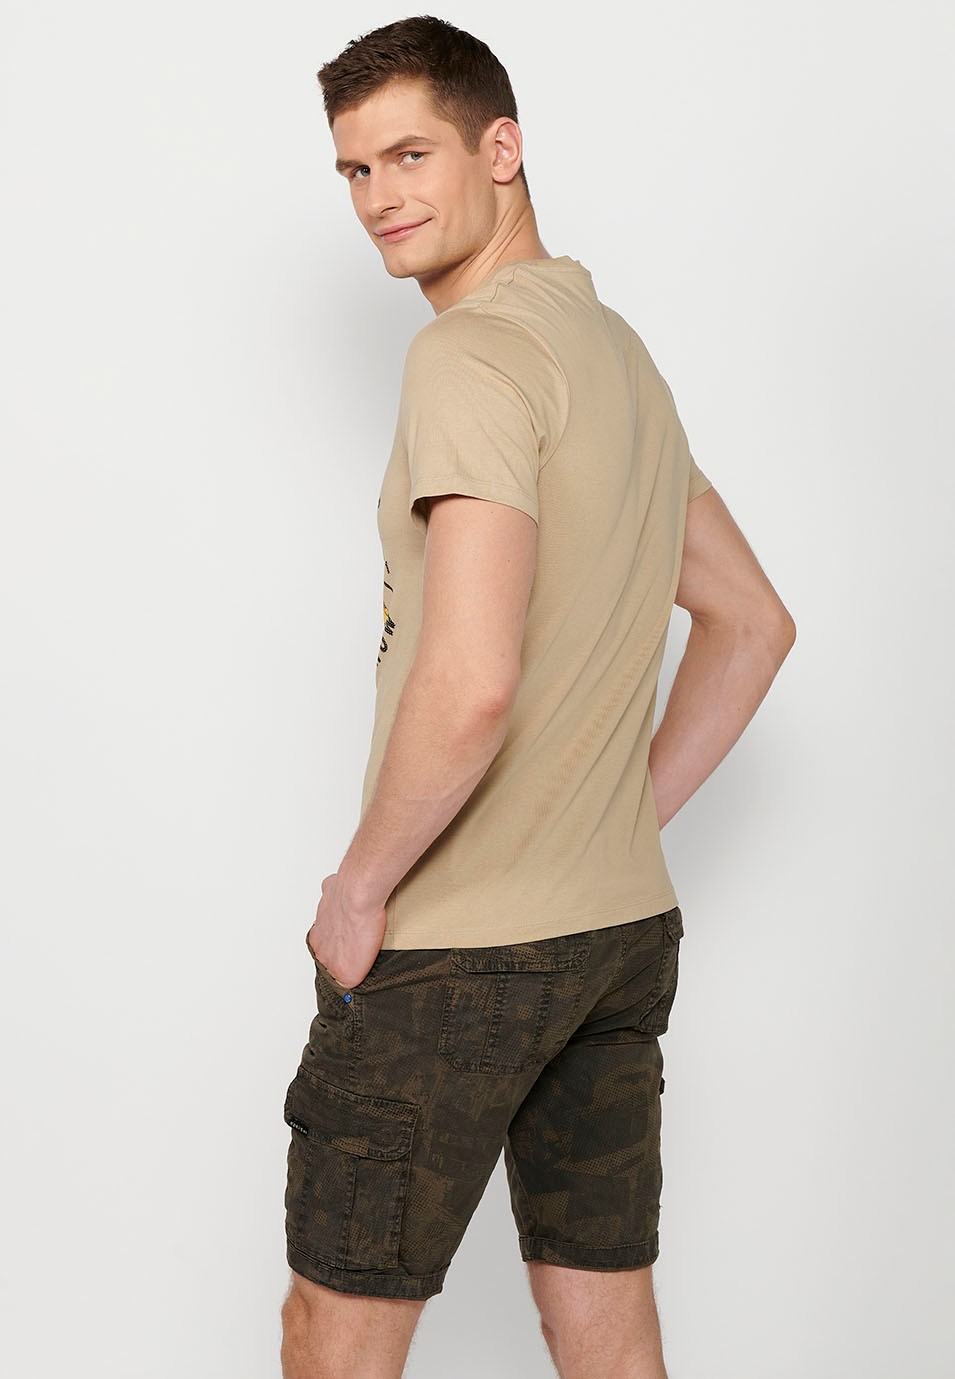 Camiseta manga corta de algodon, estampada, color piedra para hombre